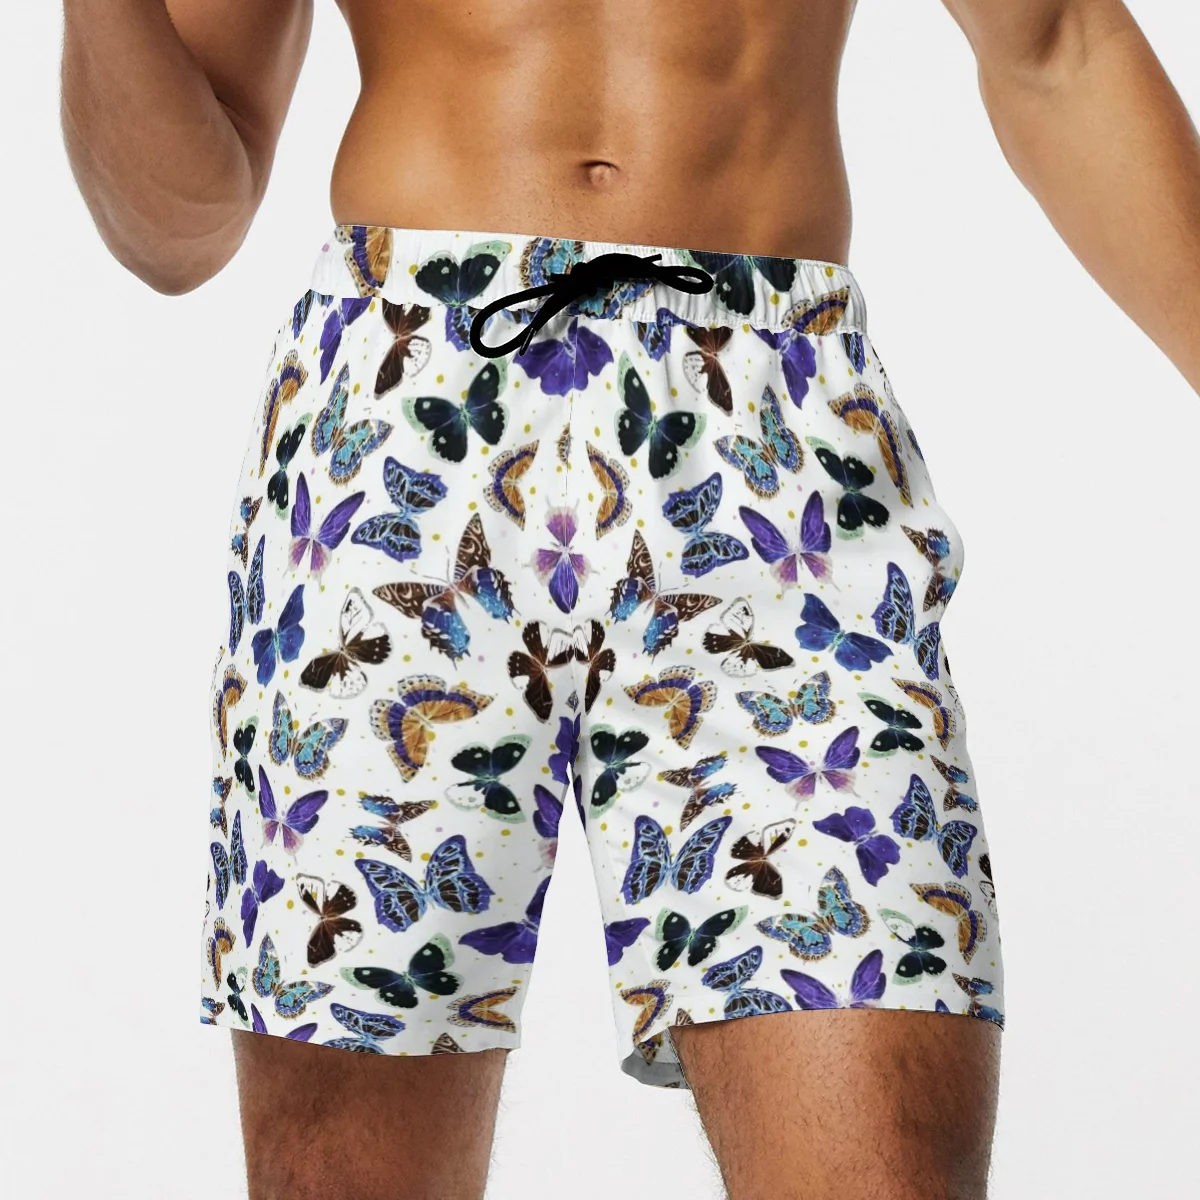 

2021 летние мужские пляжные шорты для будущих мам 3D бабочка модные мужские Бермуды пляжные шорты в стиле 90-х мальчиков фиолетовая брюки разме...